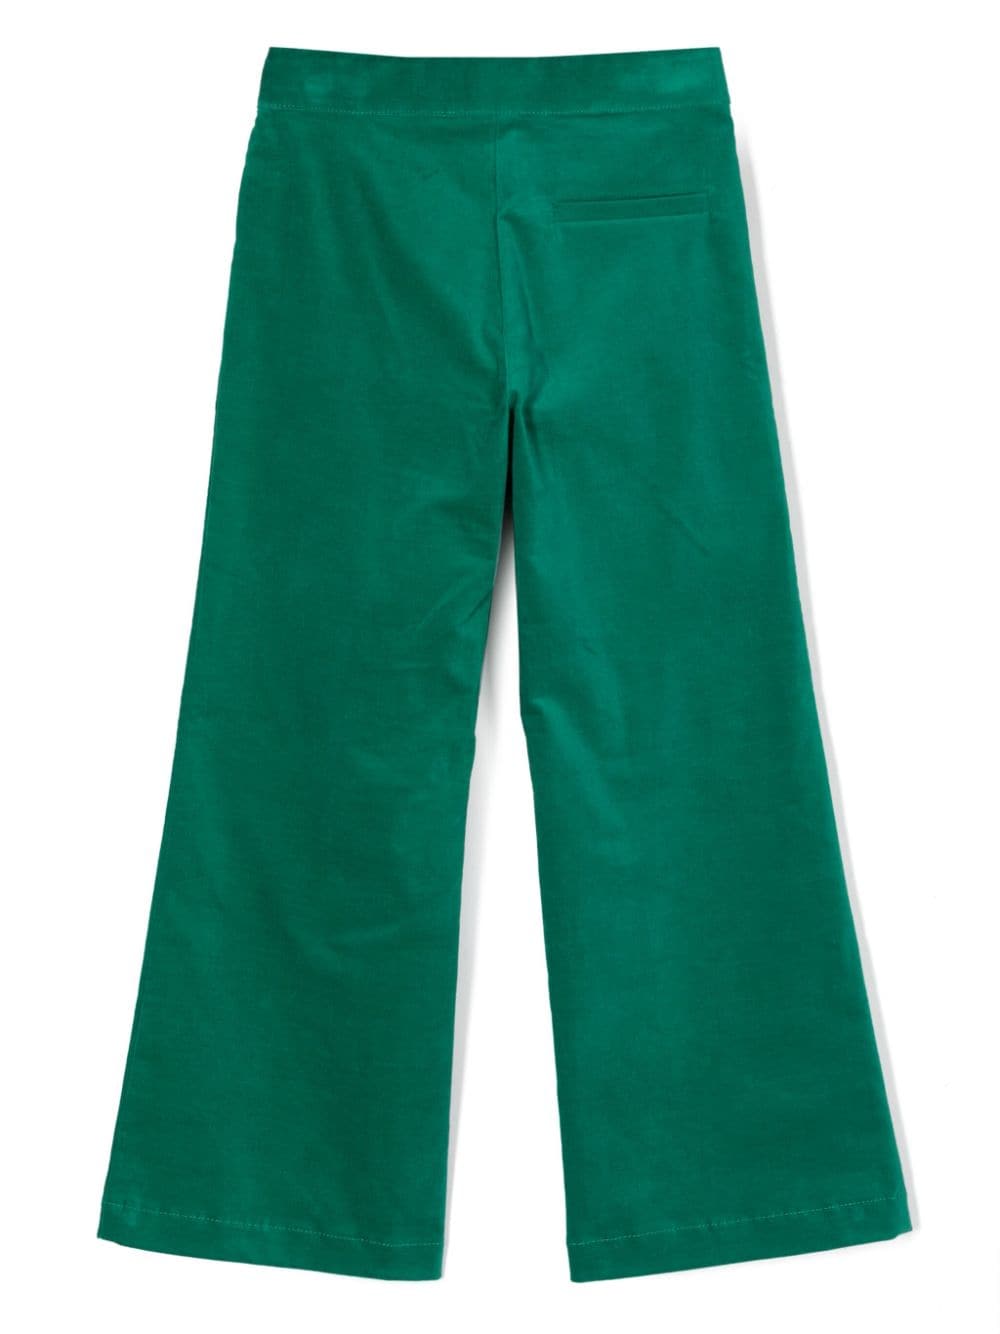 Pantaloni verdi smeraldo bambina con logo